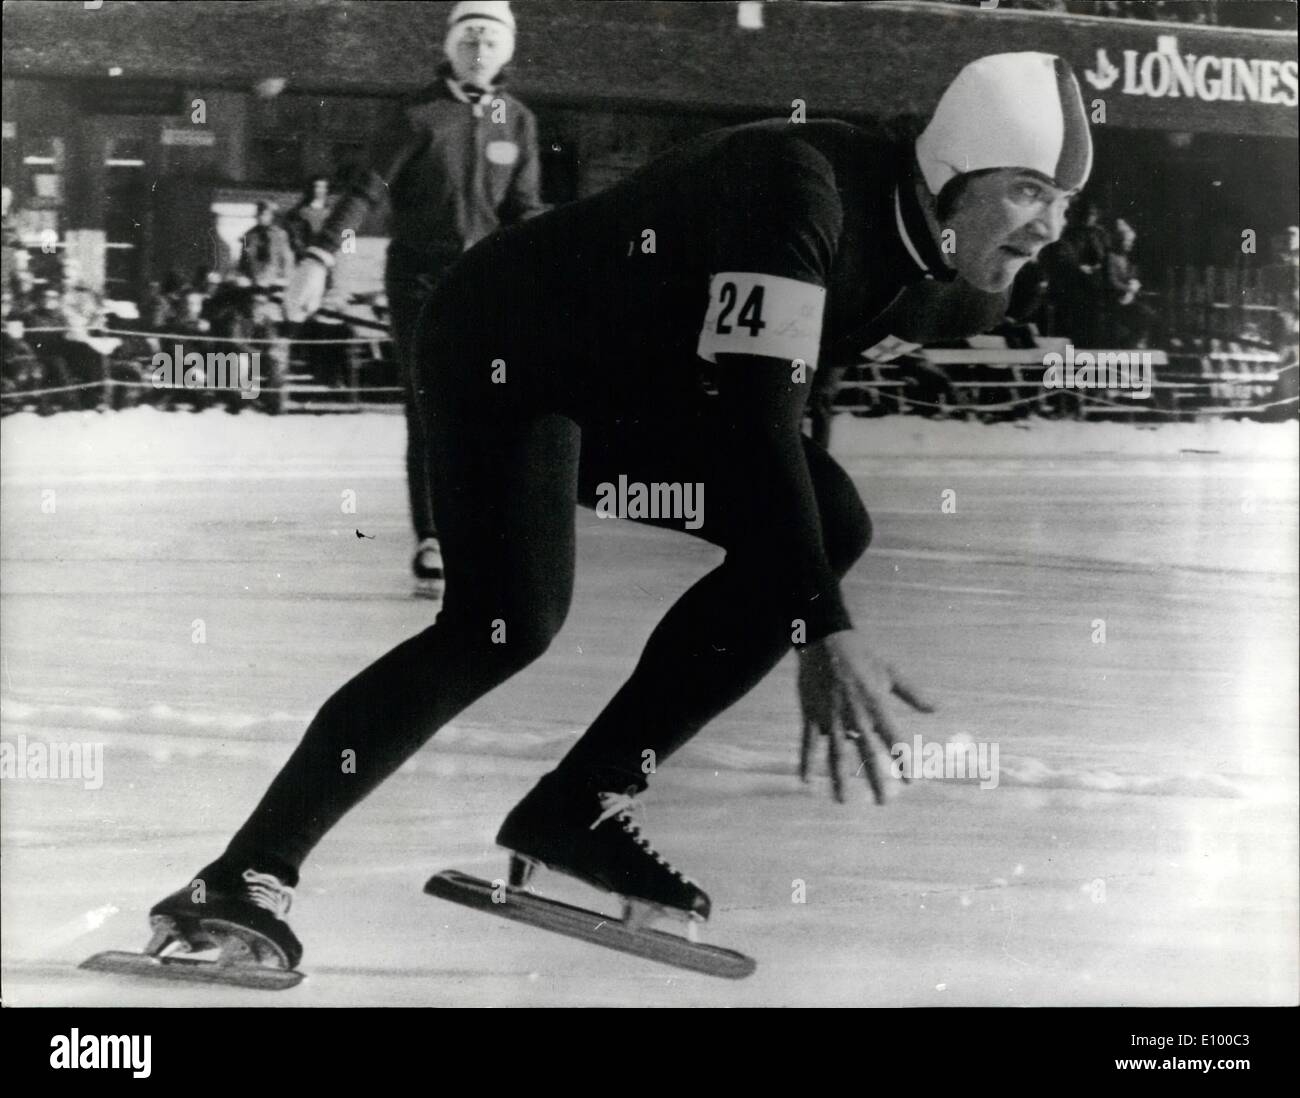 11 gennaio 1972 - gennaio 11th, 1972 nuovo record del mondo di velocità il pattinaggio su ghiaccio. A Davos Leo Linkovesi di Finlandia configurare un sensazionale nuovo record del mondo di velocità il pattinaggio su ghiaccio a 500 metri 38,0 secondi. Foto Stock